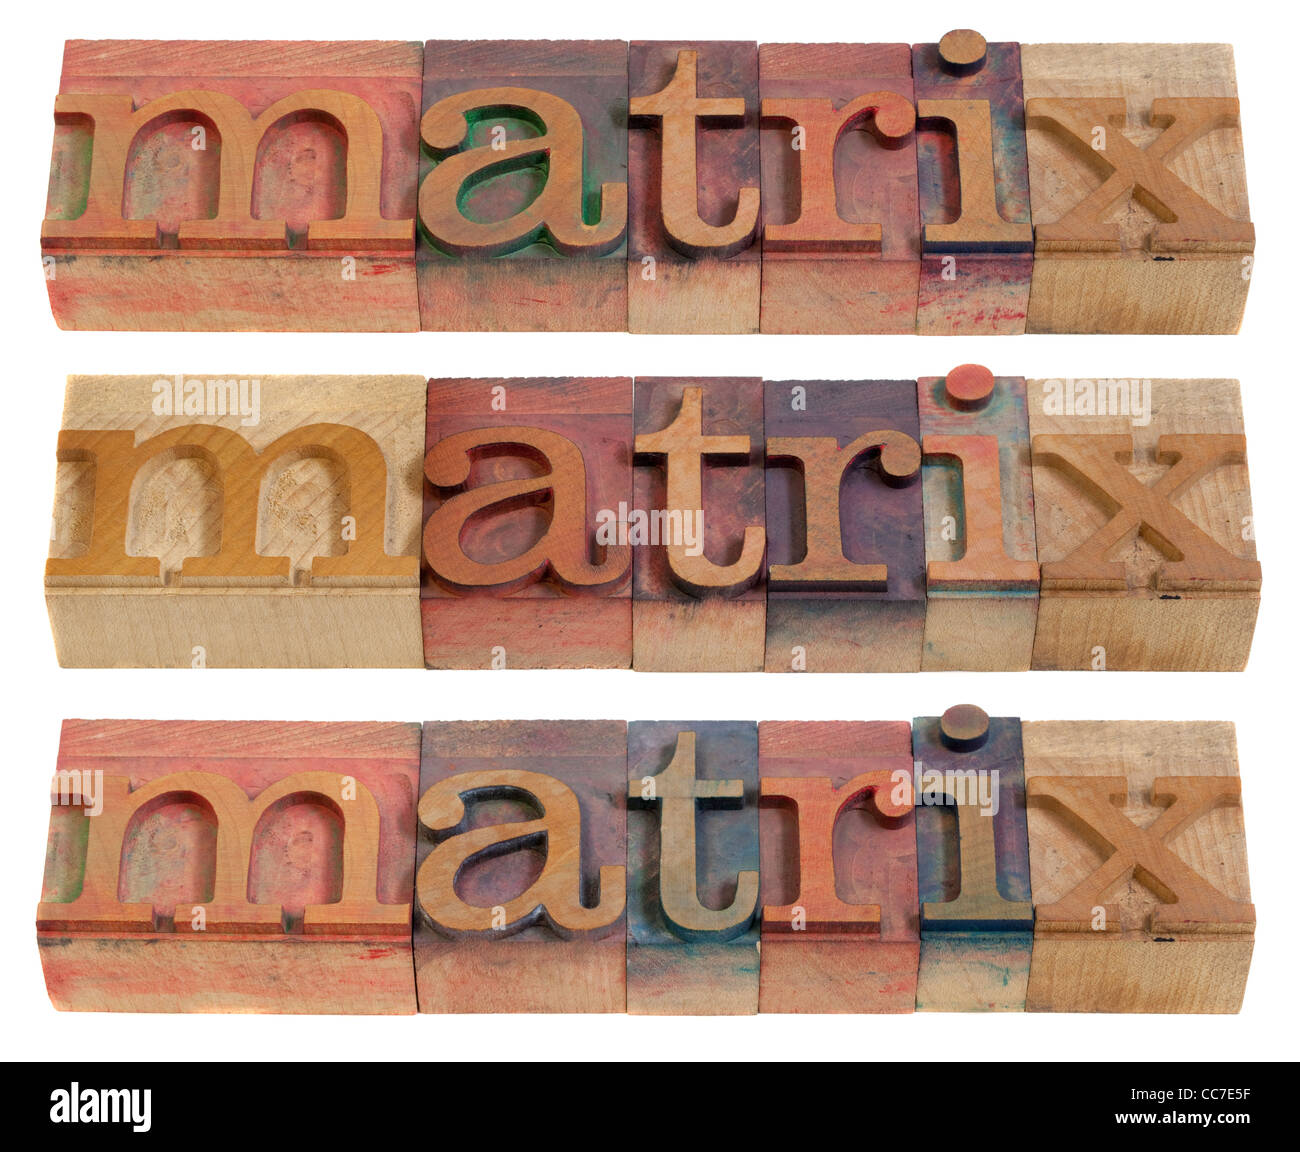 Matrix-Wort in Vintage Holz Buchdruck Druckstöcken, befleckt durch Farbe Tinten, isoliert auf weiss, drei layouts Stockfoto